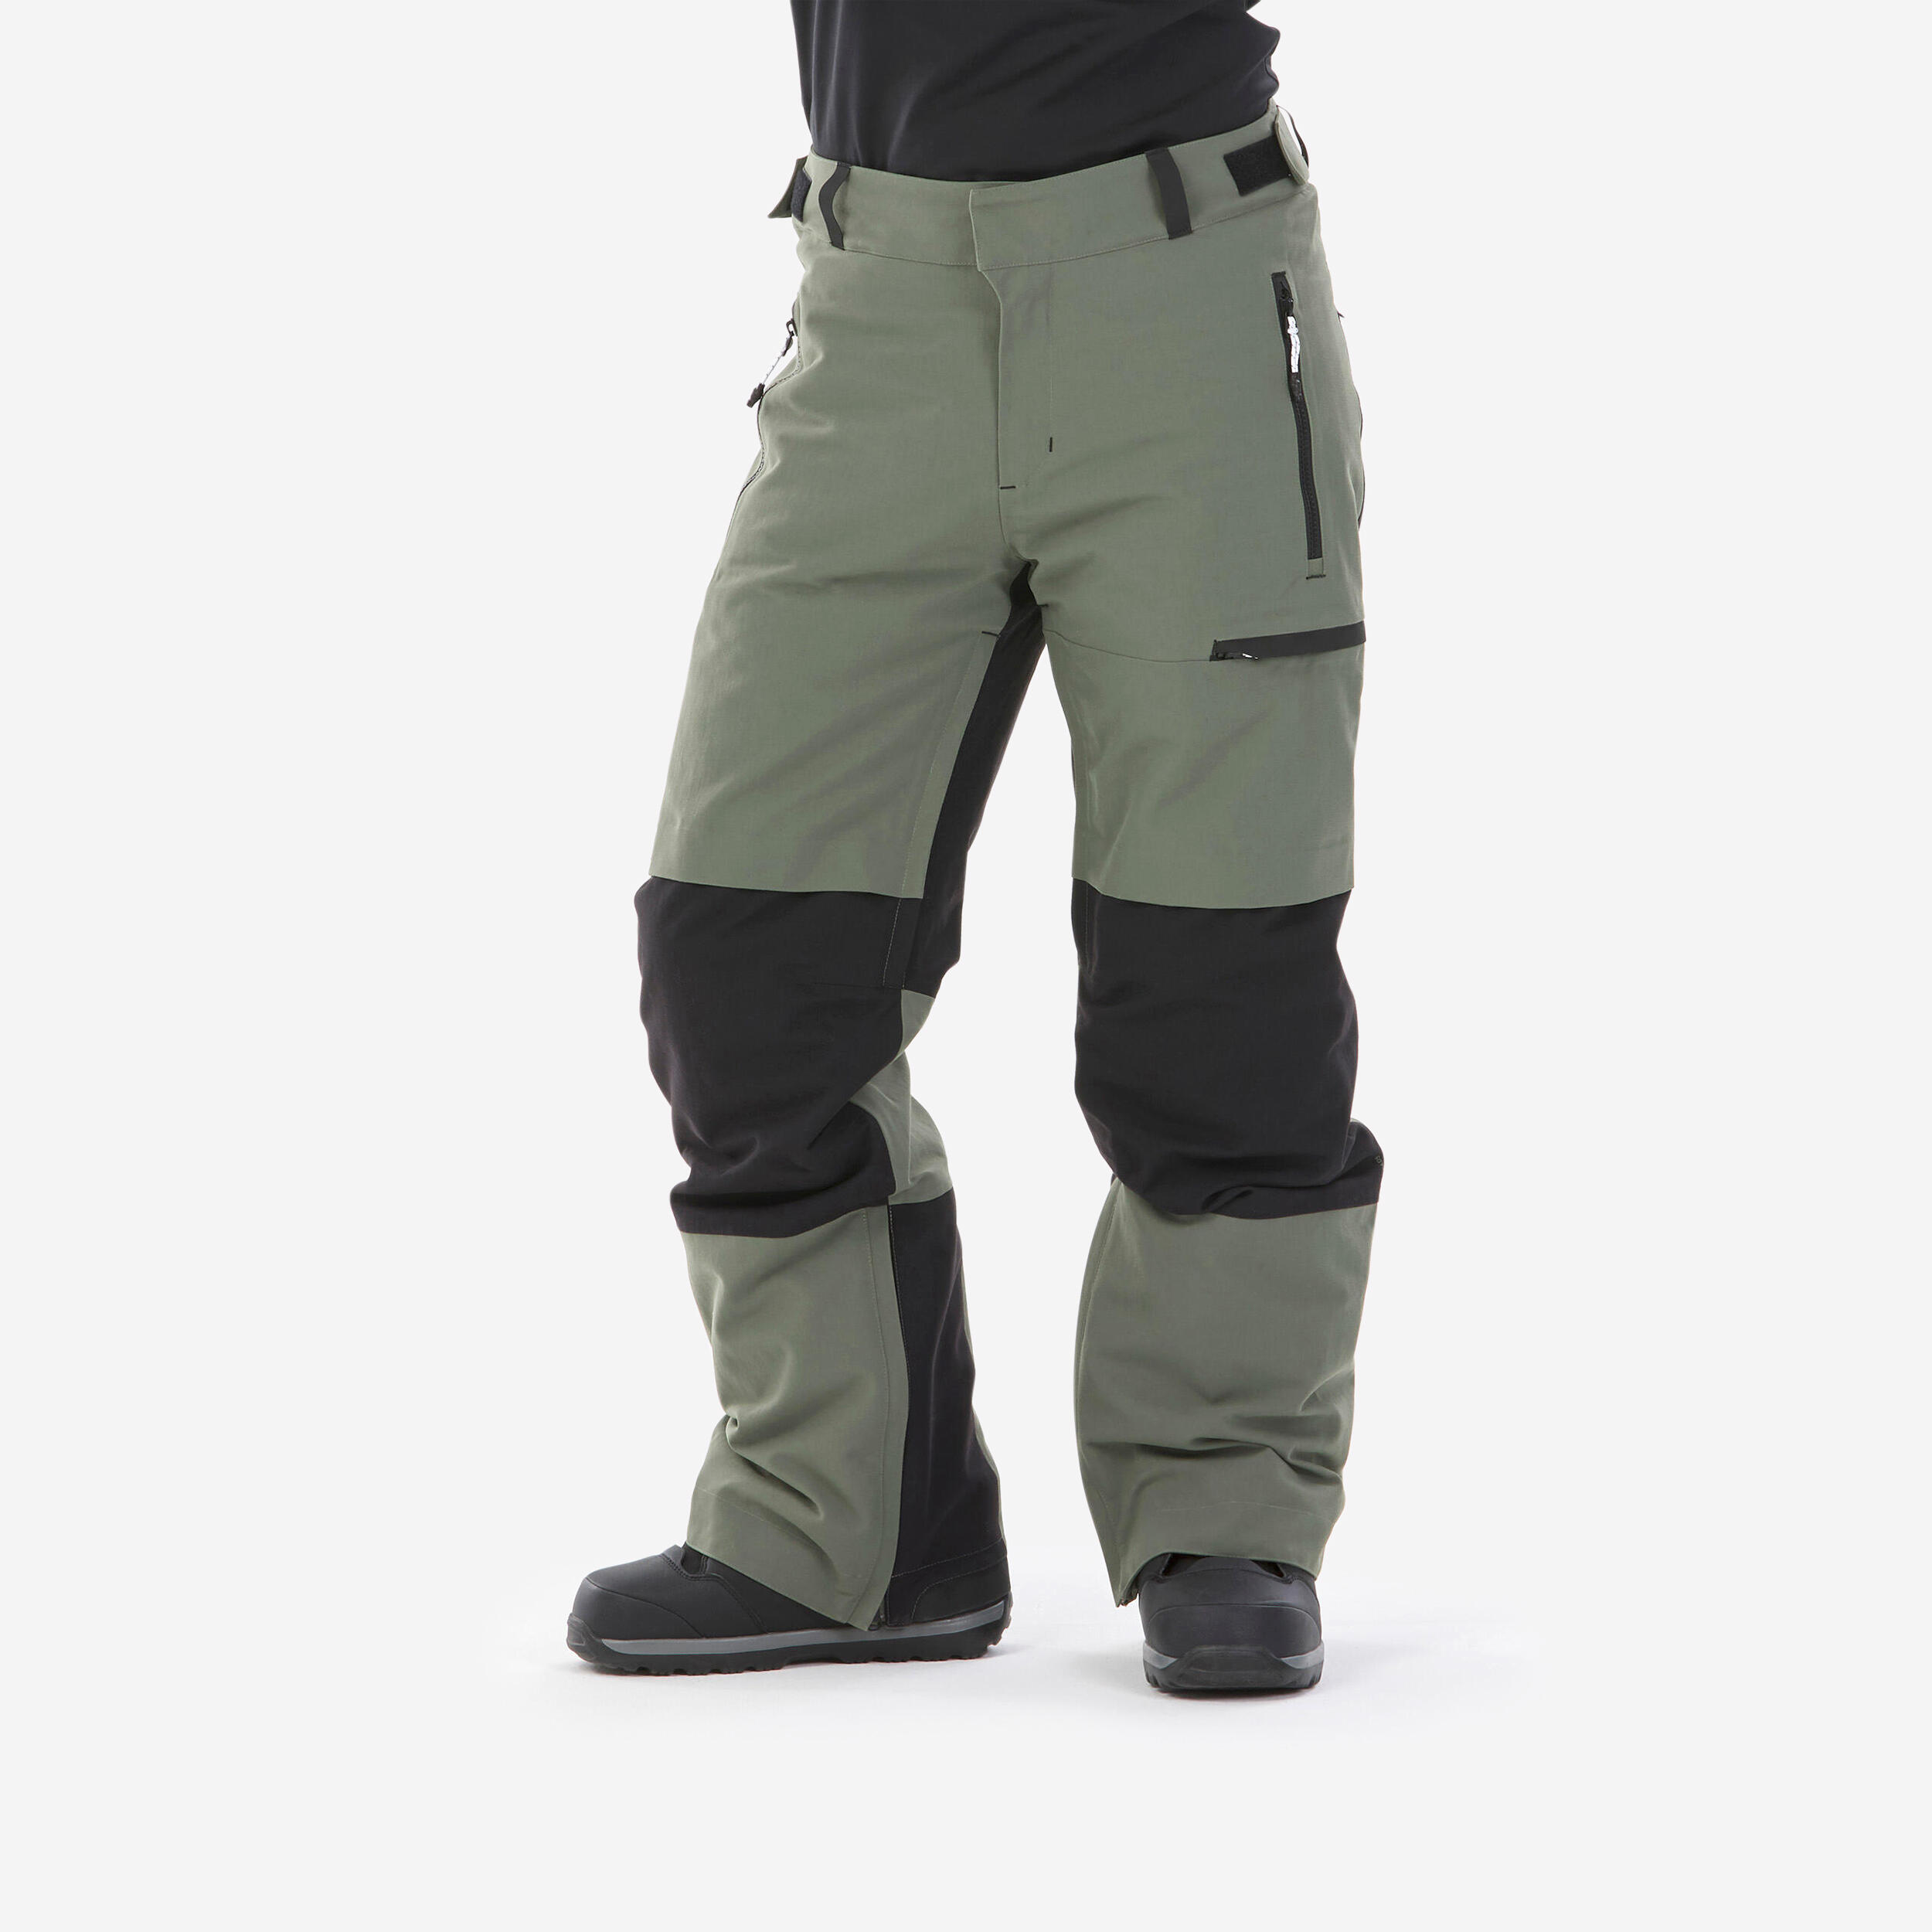 Pantalon Impermeabil Snowboard Snb500 Kaki Barbati